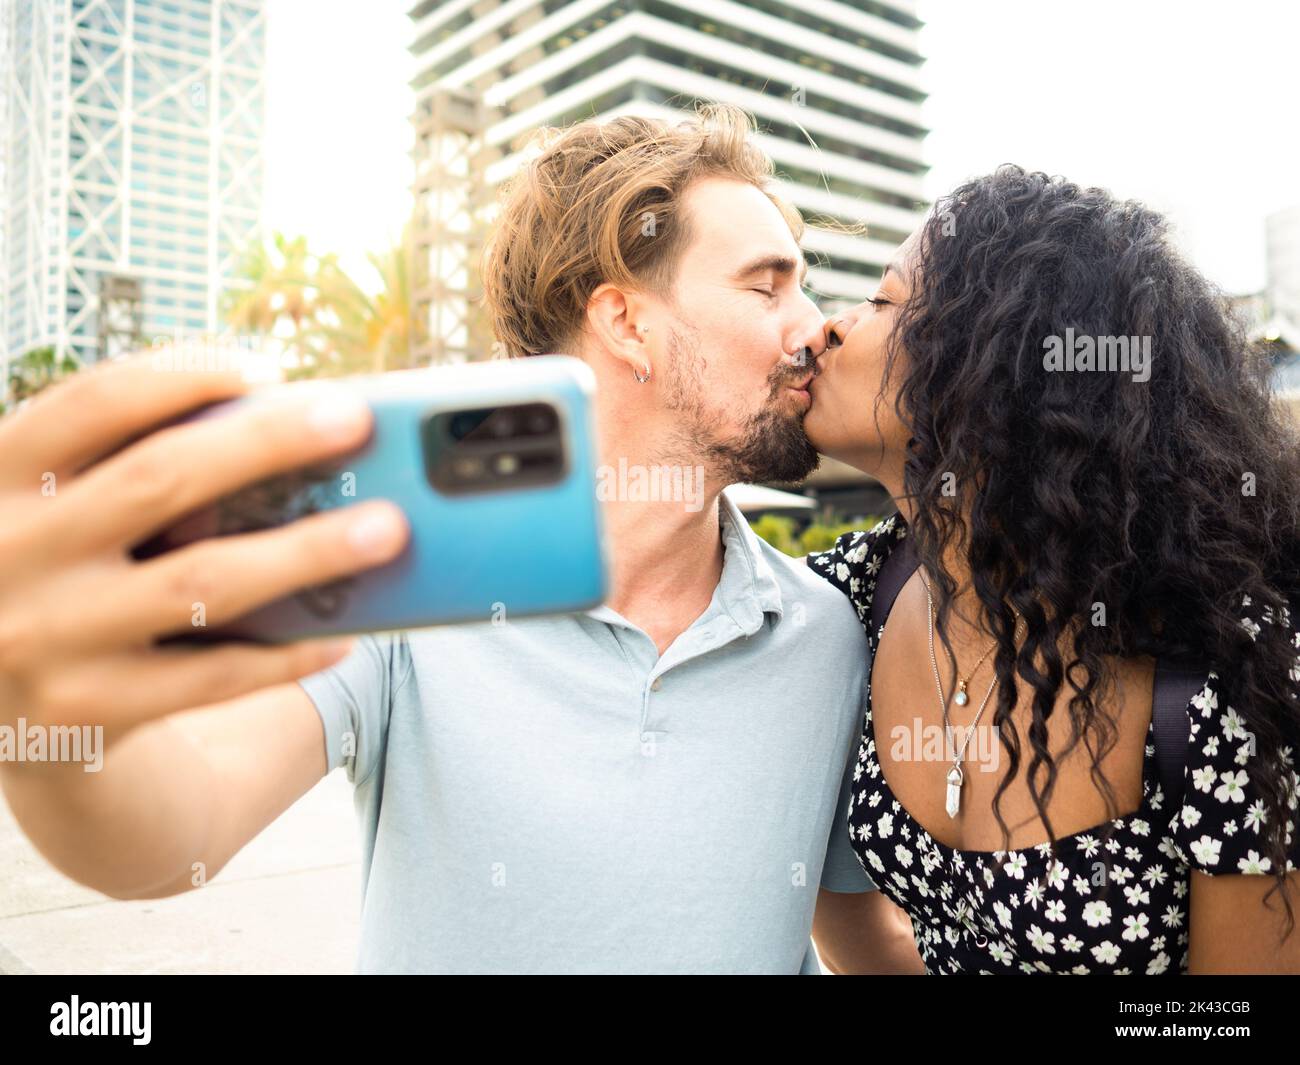 Divers couple hétérosexuel dans l'amour embrassant tout en prenant un selfie. Amoureux, lune de miel Banque D'Images